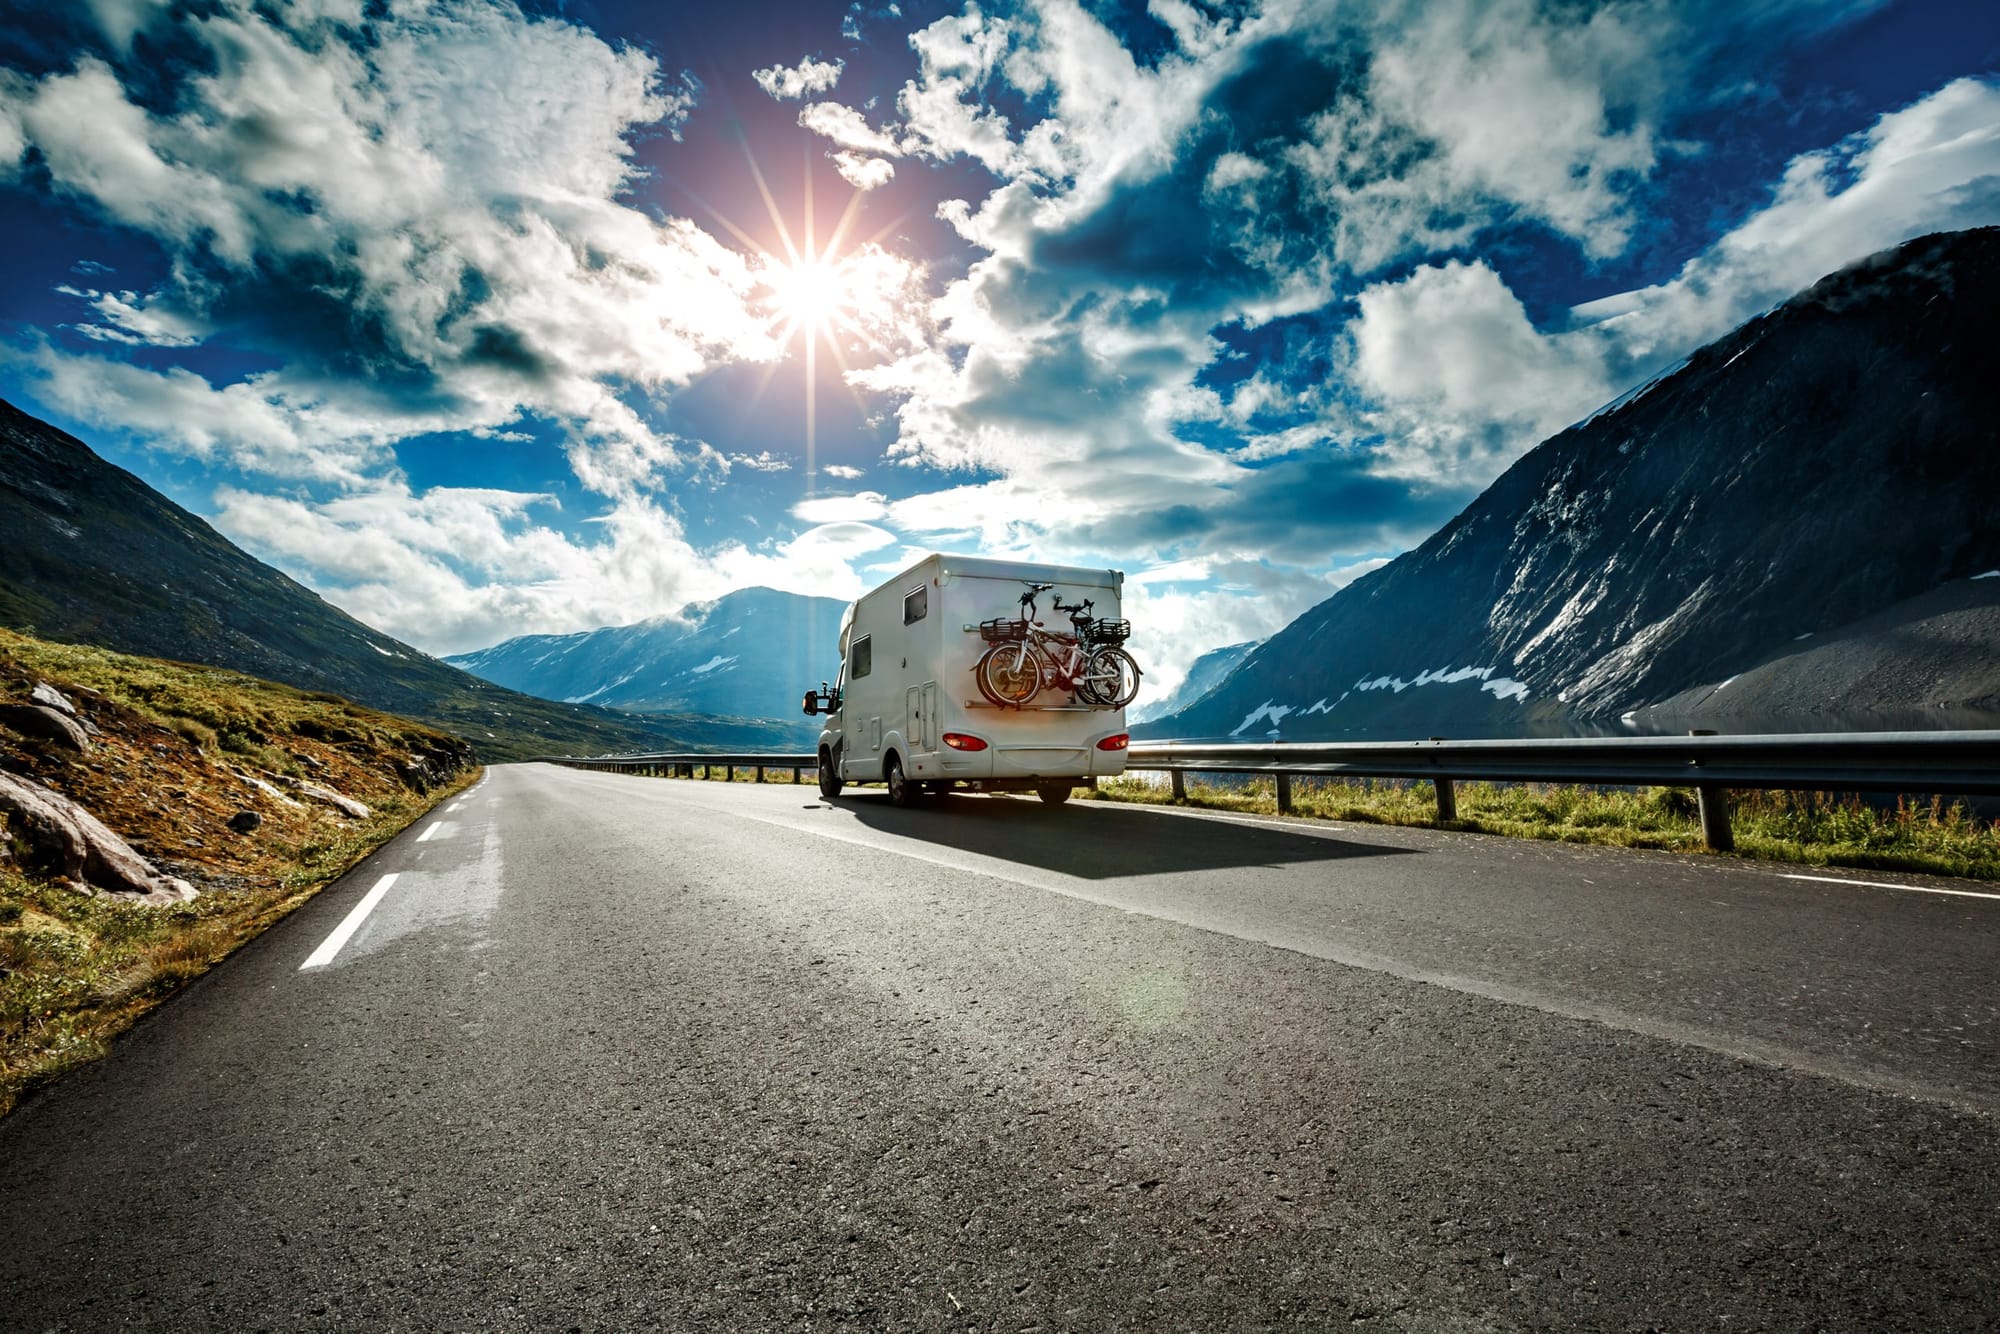 caravan-car-travels-on-the-highway-2021-08-26-22-59-46-utc-scaled.jpg